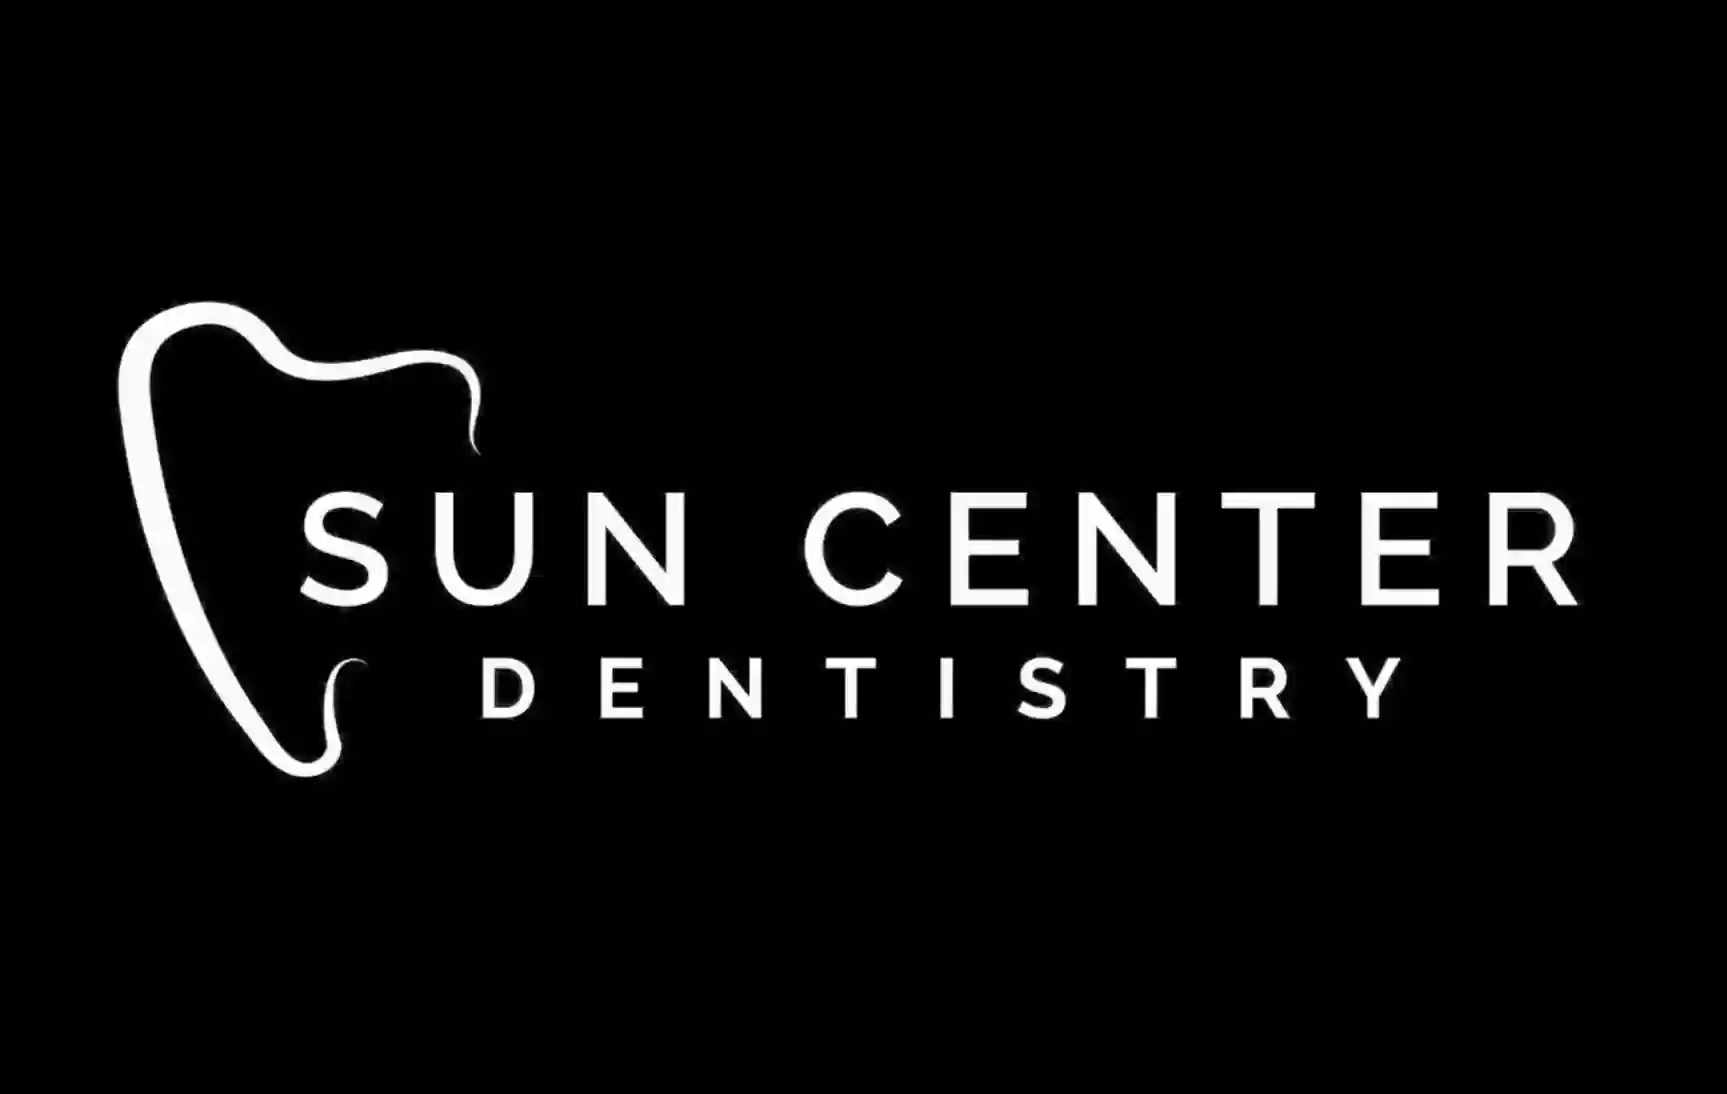 Sun Center Dentistry